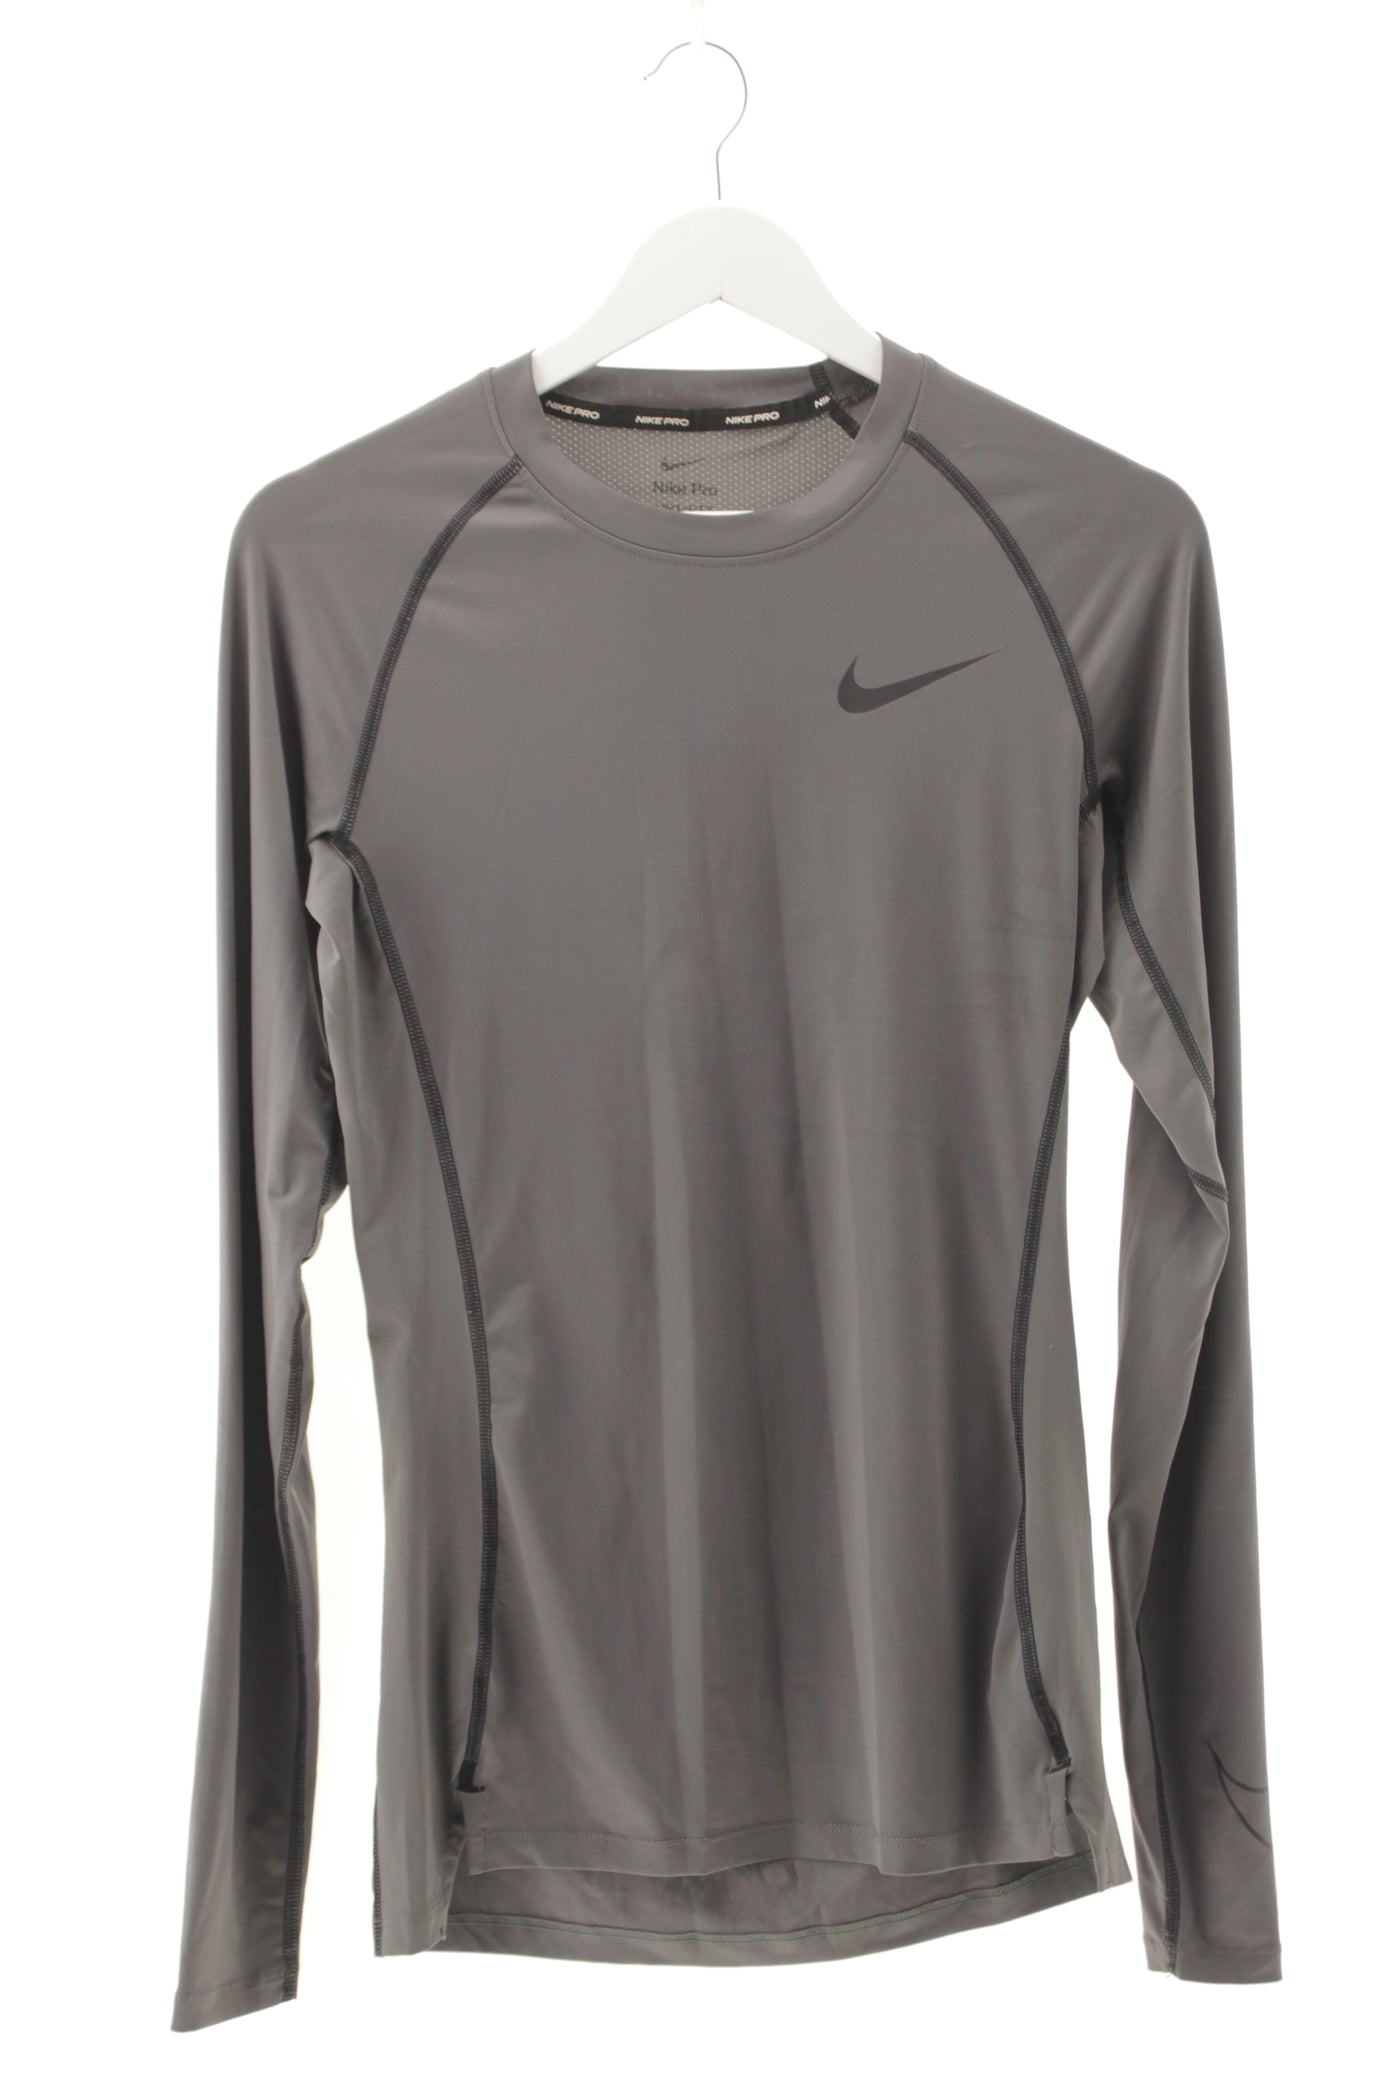 Camiseta gris manga larga sport performance